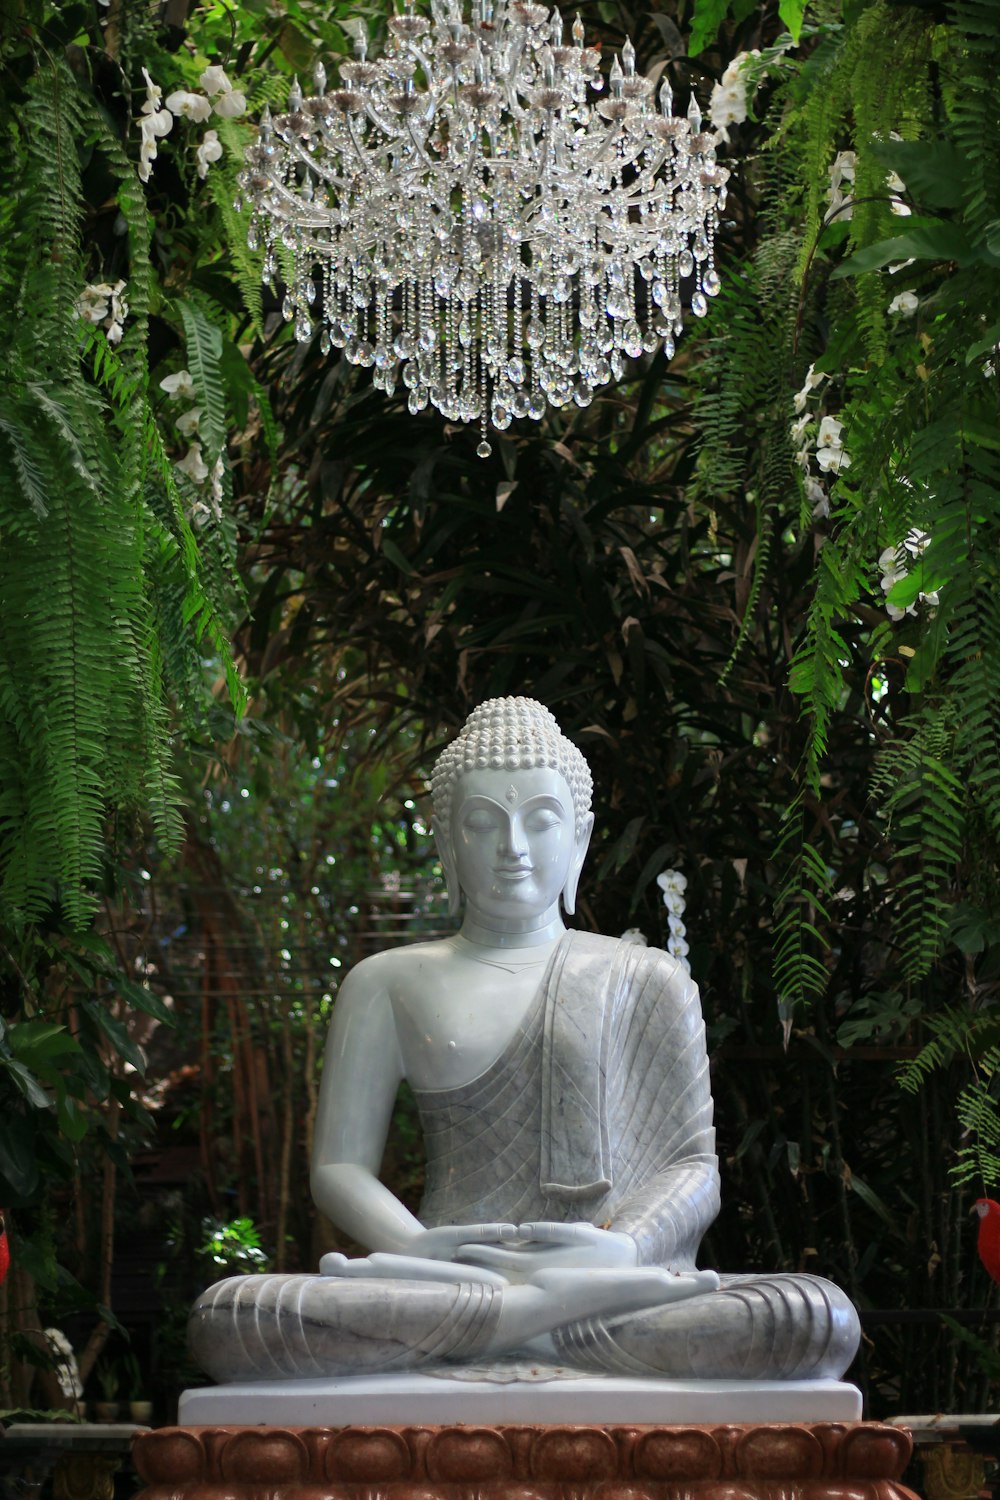 Una statua di un Buddha seduto in un giardino